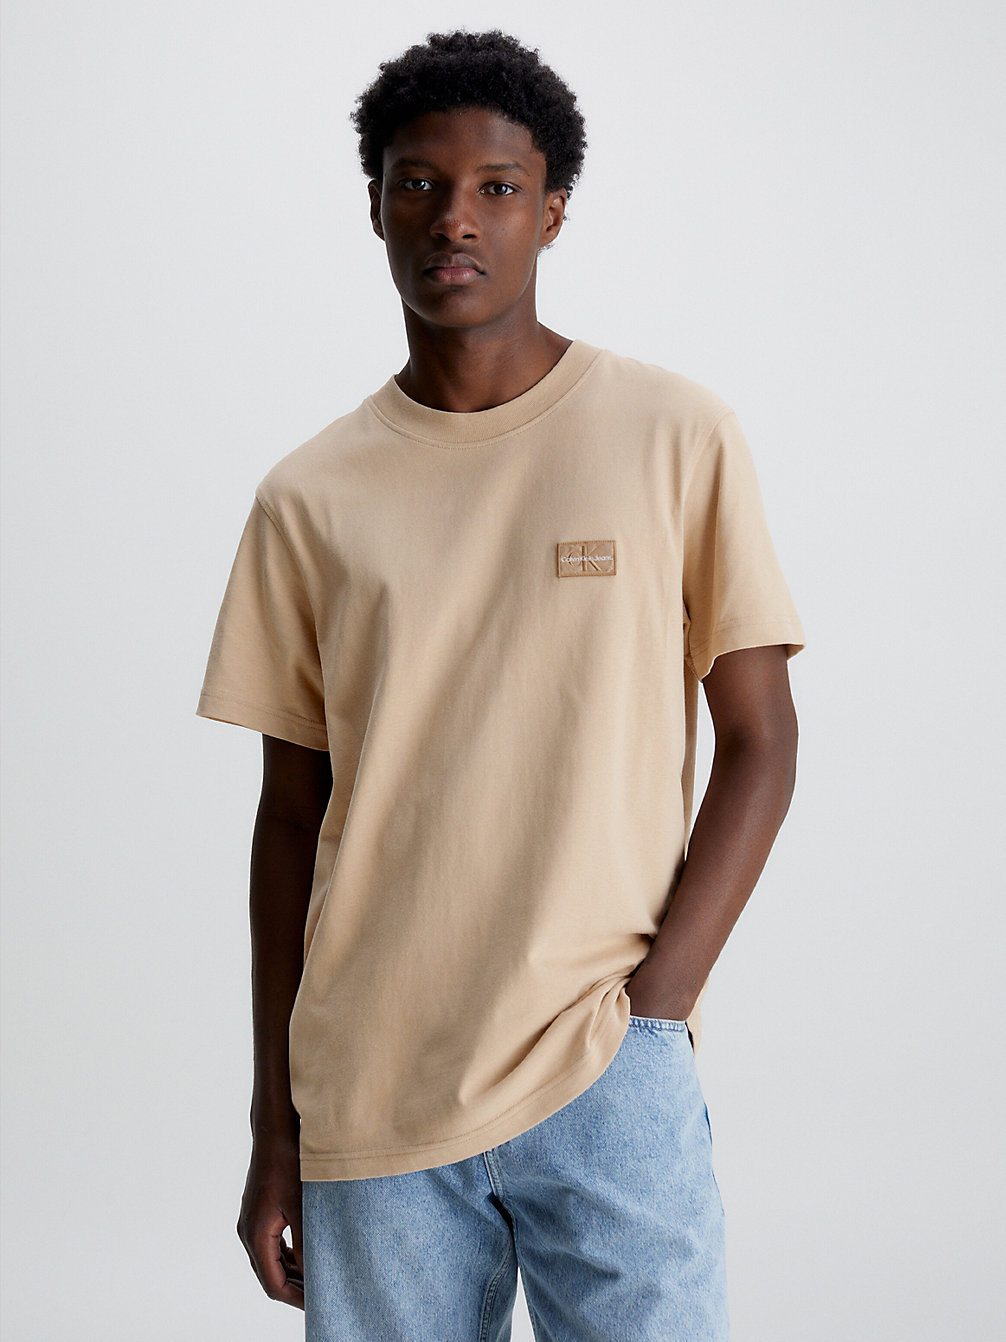 T-Shirt En Coton Recyclé Avec Insigne > TRAVERTINE > undefined hommes > Calvin Klein